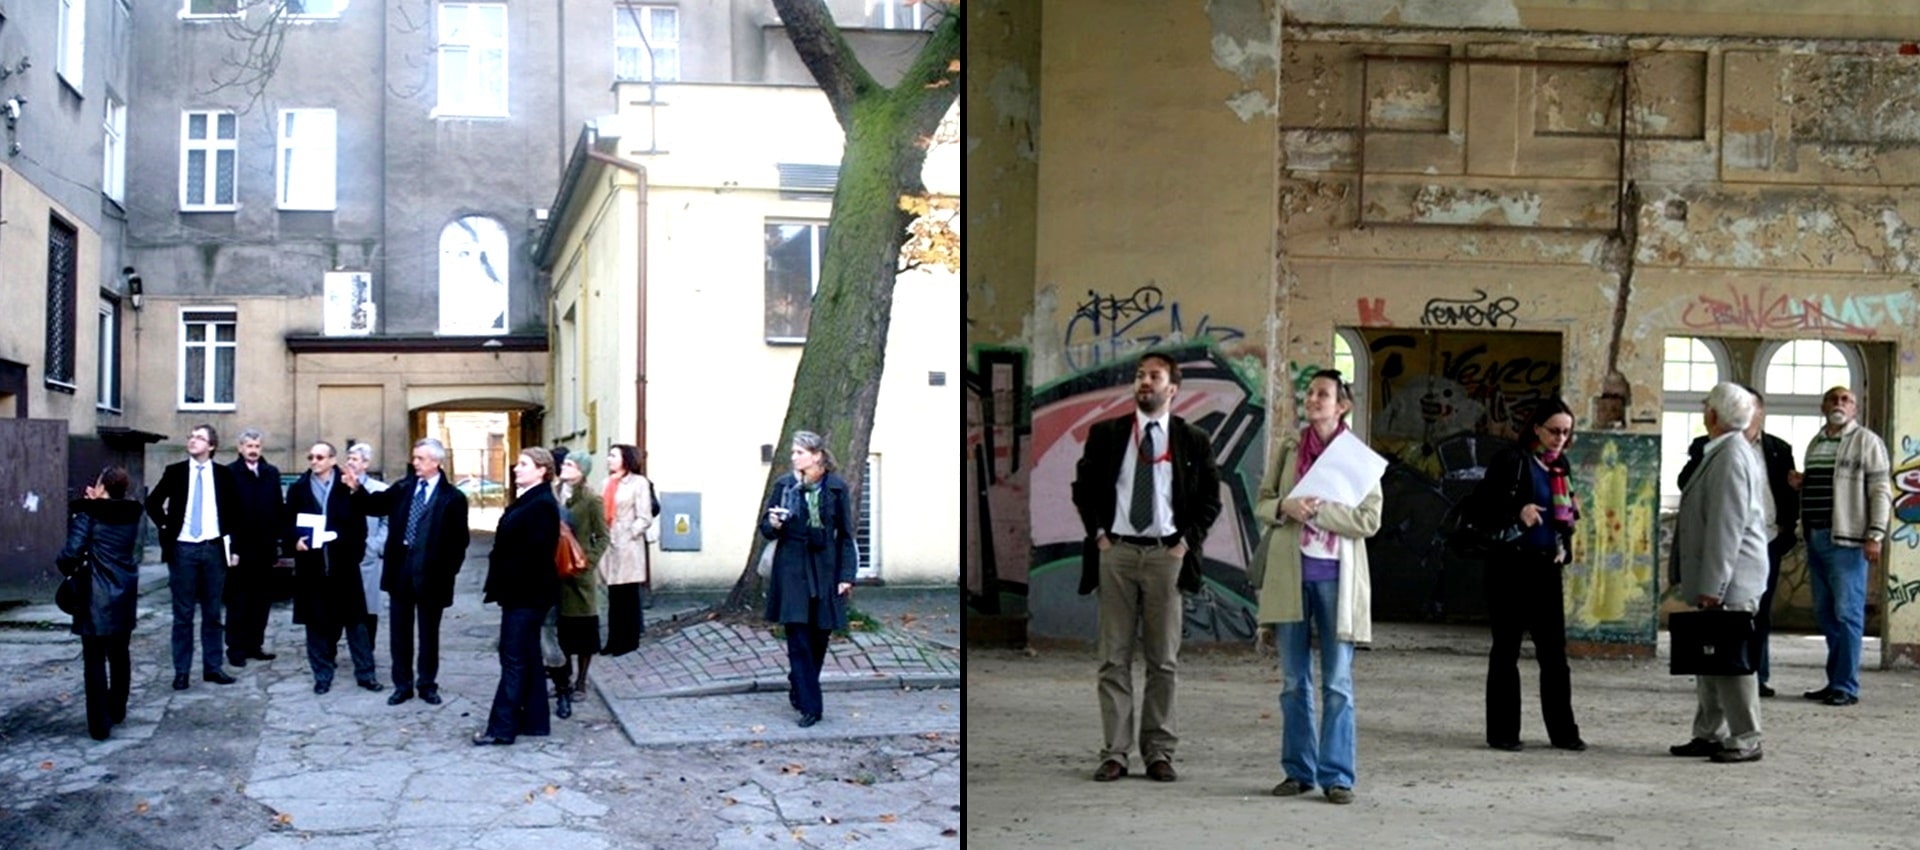 Dwa połączone ze sobą zdjęcia. Na zdjęciu po lewej stronie grupa ludzi stoi na wybetonowanym podwórku, a na zdjęciu po prawej stronie grupa ludzi stoi w środku budynku